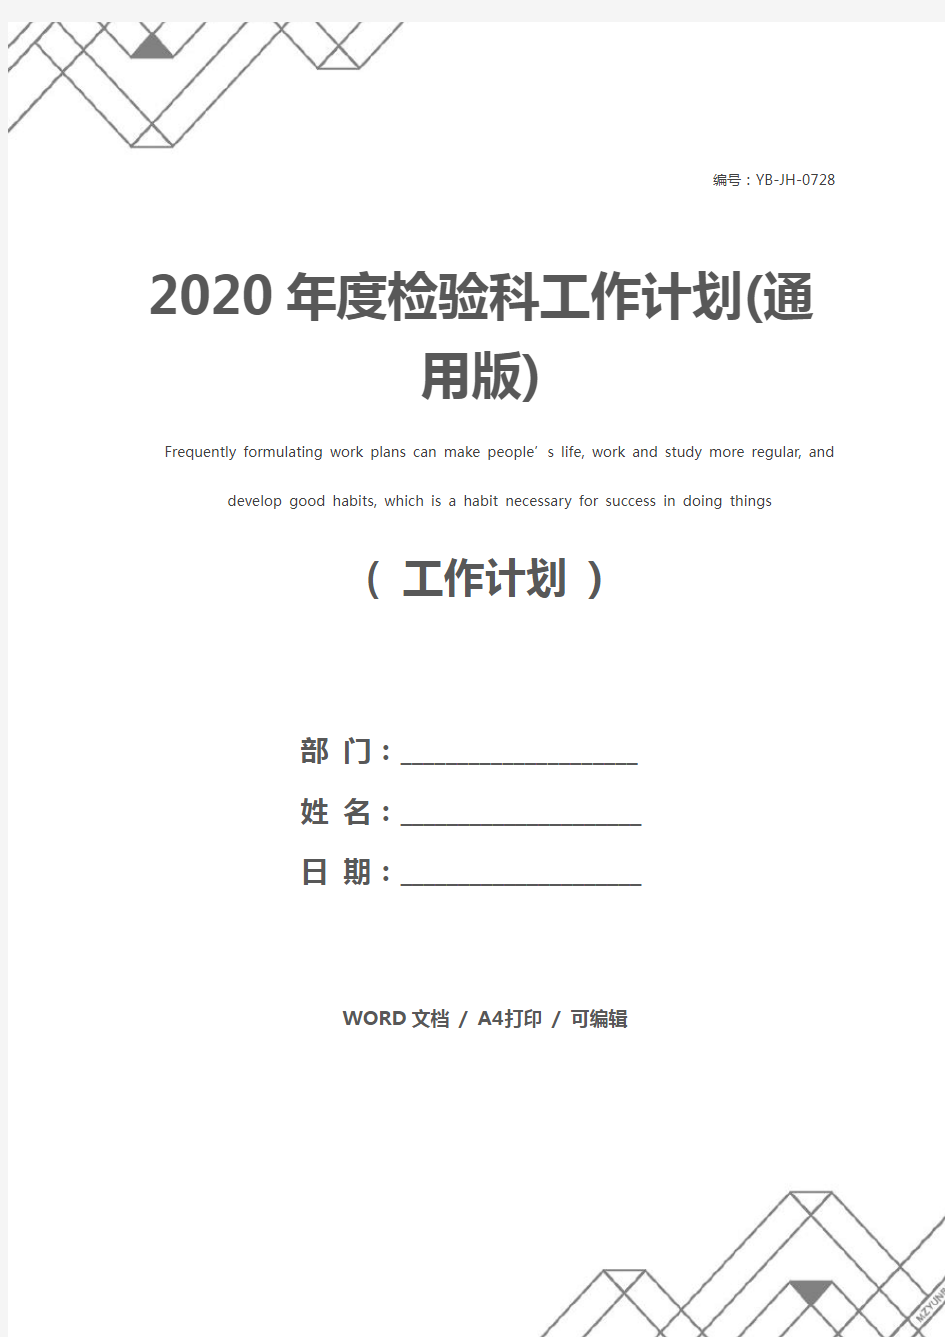 2020年度检验科工作计划(通用版)